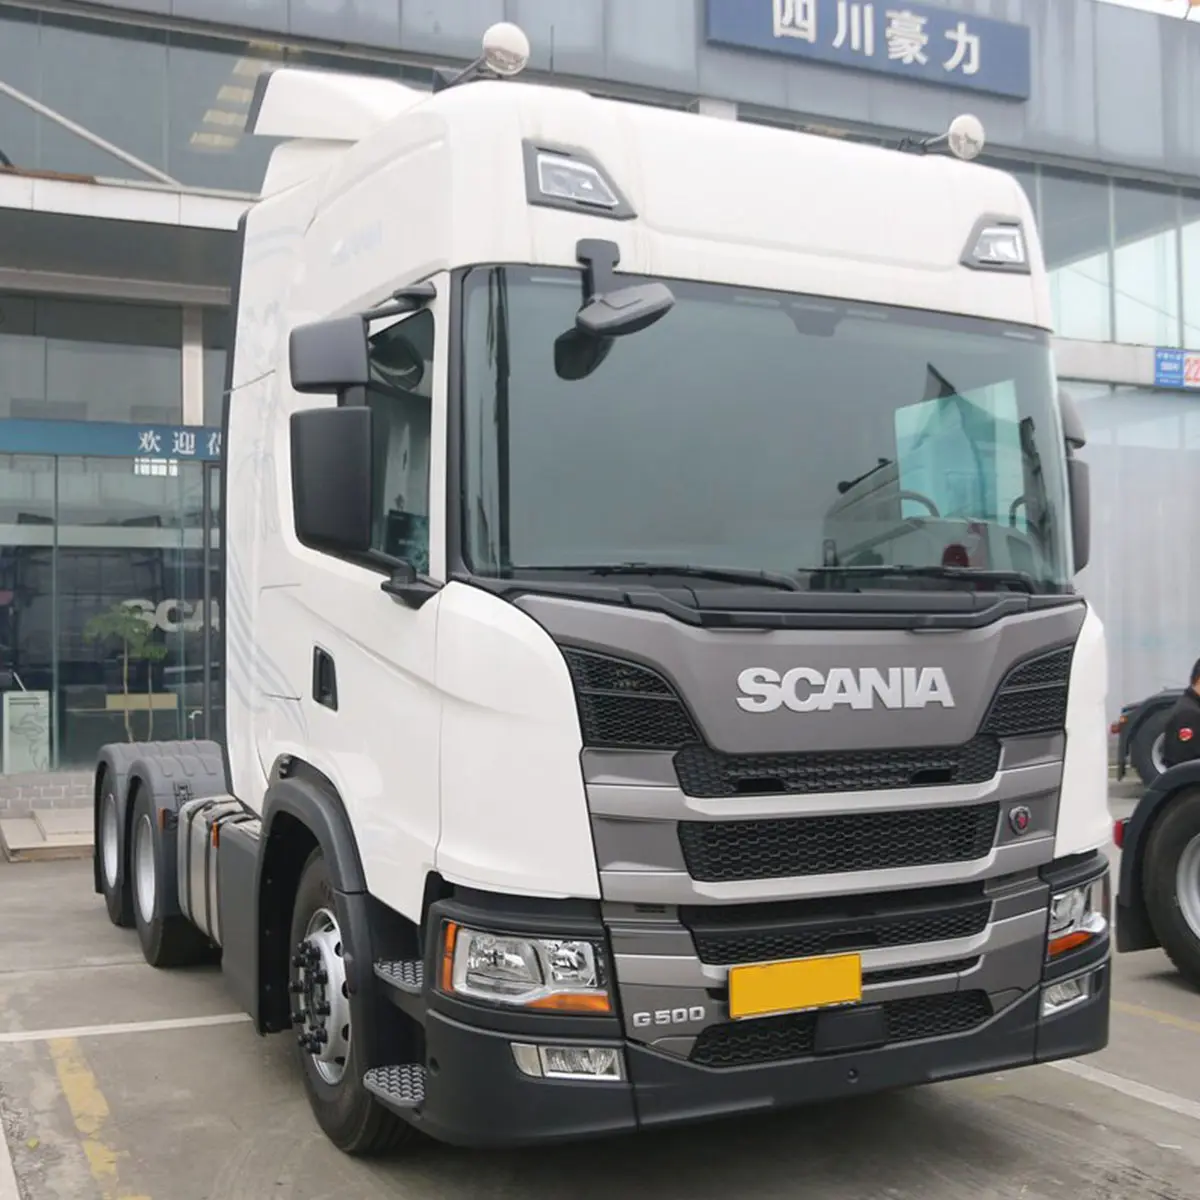 Venda de tratores de caminhões Scania 420 v o lvo marca em bom estado